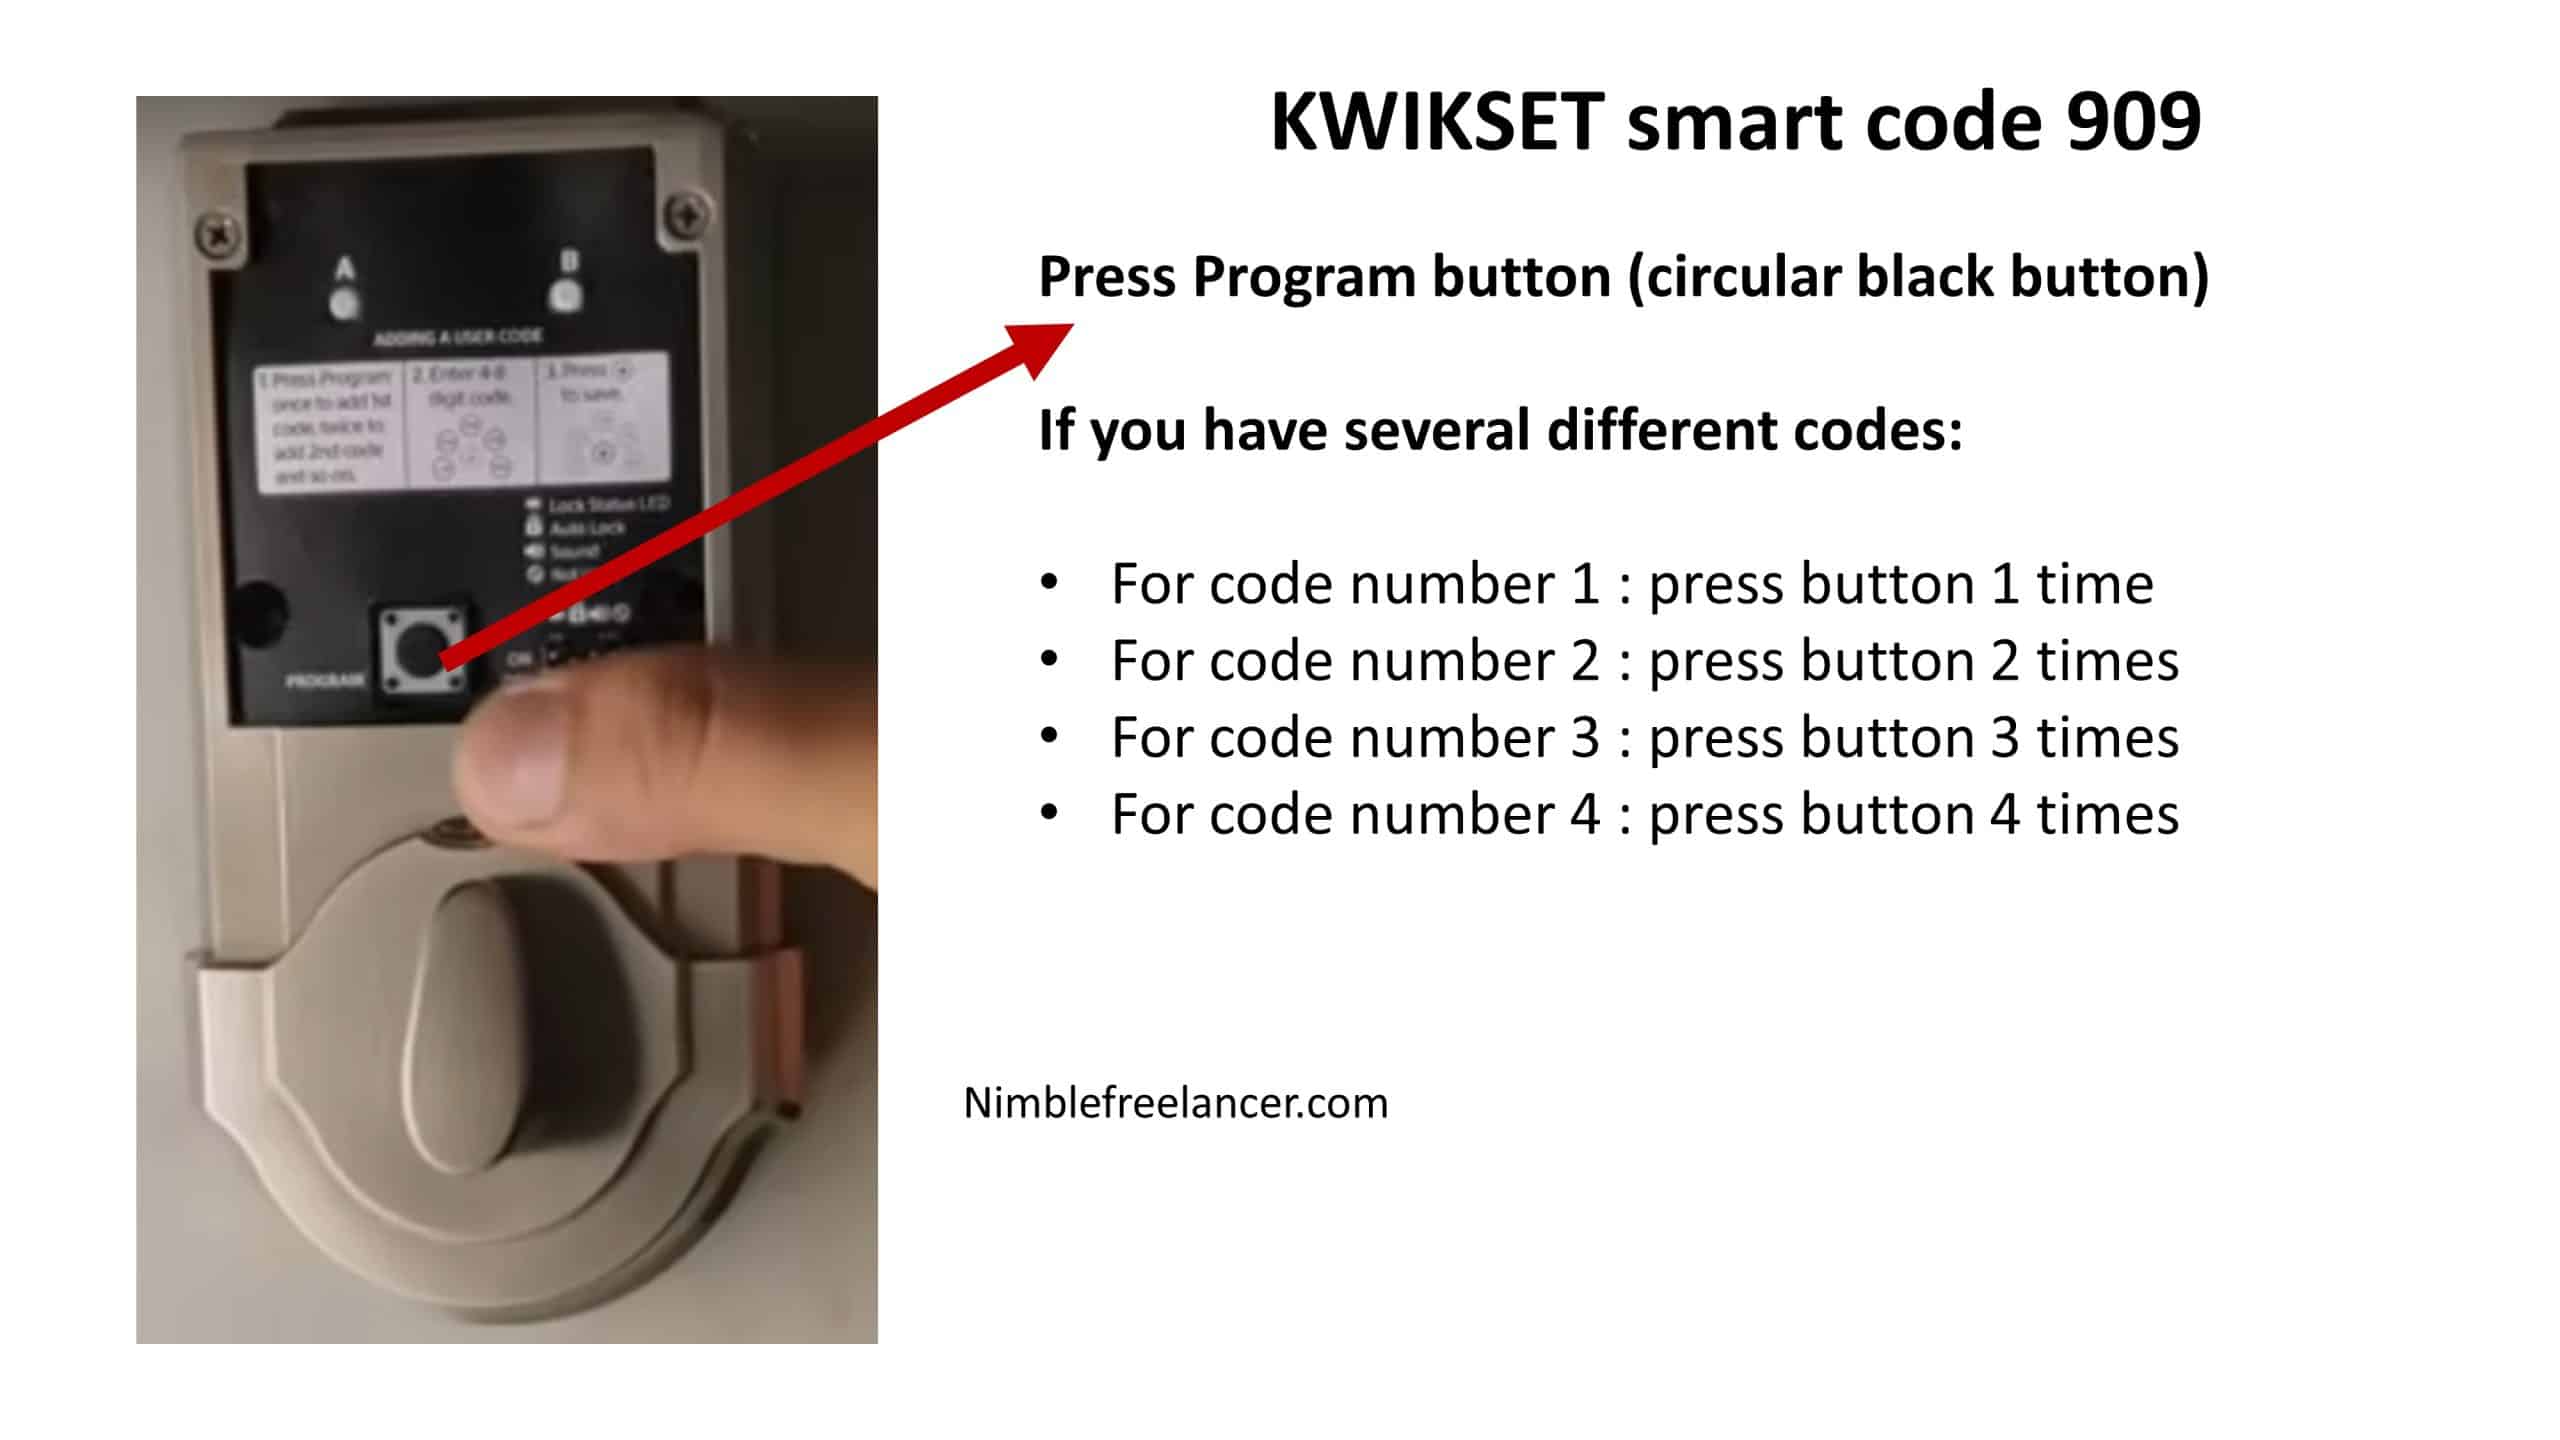 How to Change Code on Kwikset Smartcode 909